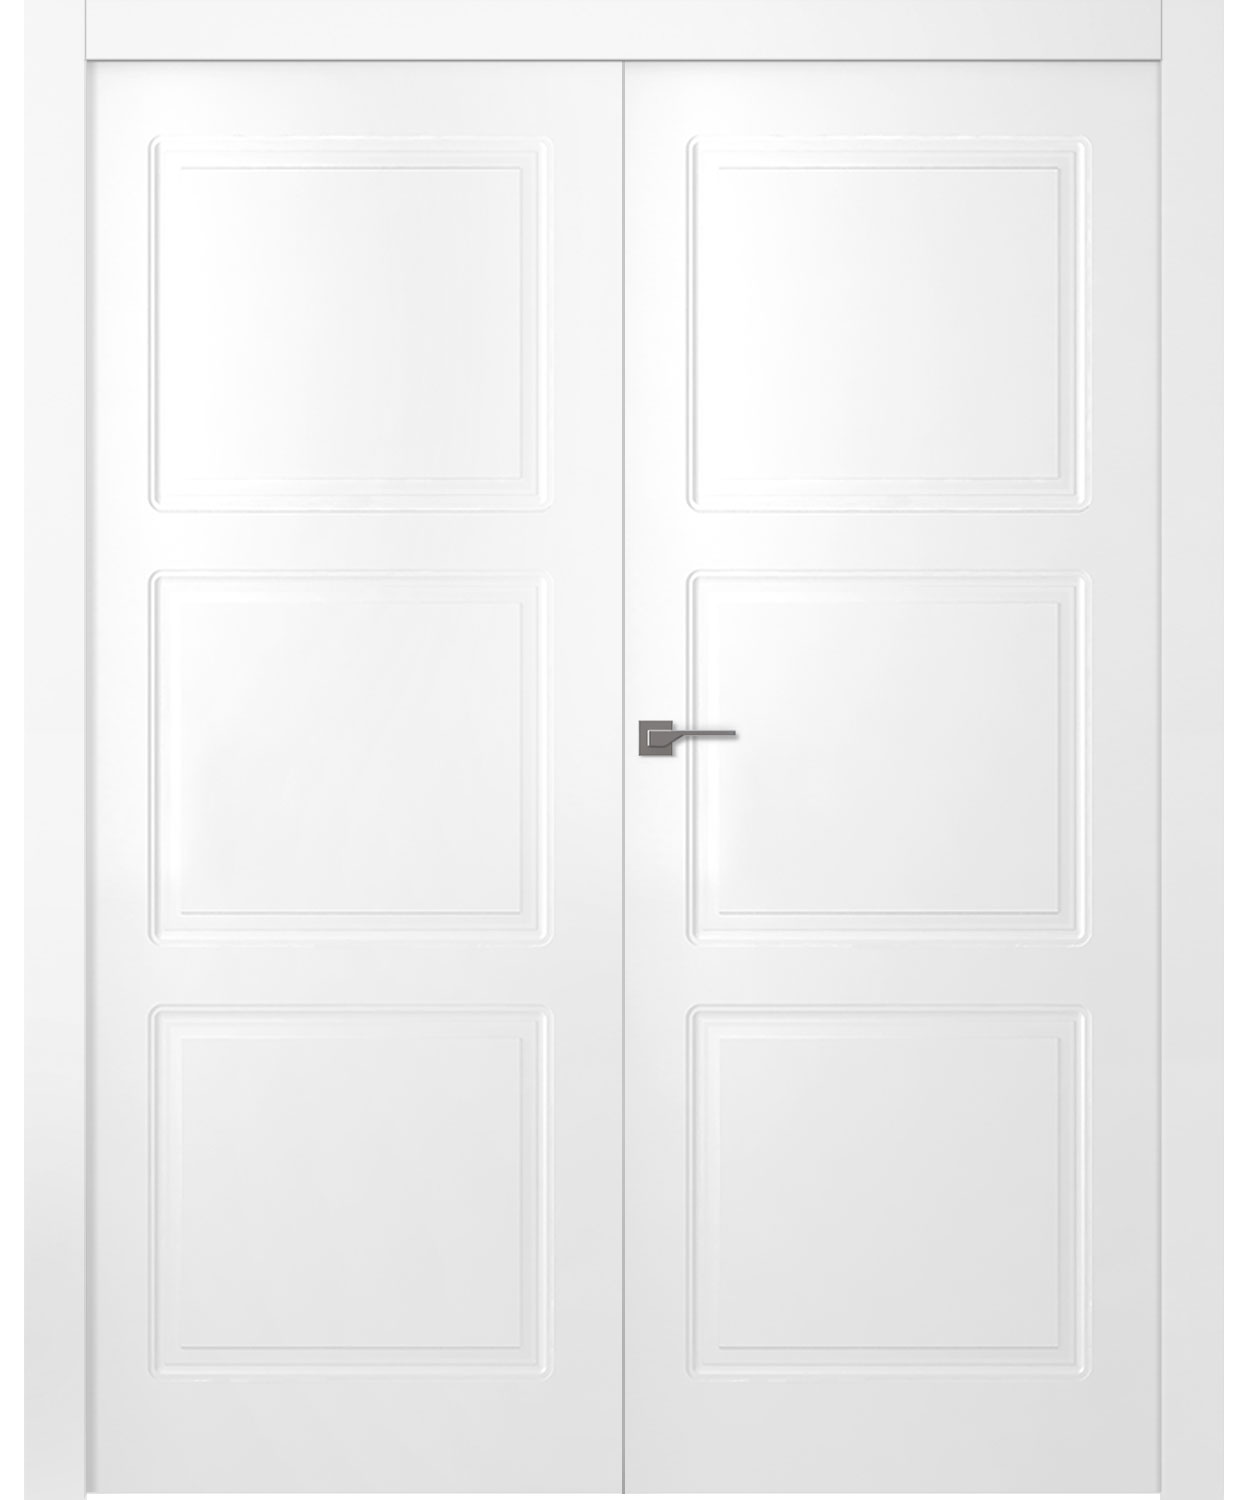 Дверное Полотно Пвдгщ "Granna" Эмаль Белый 2,0-0,9 Smart Core Распашная двойная